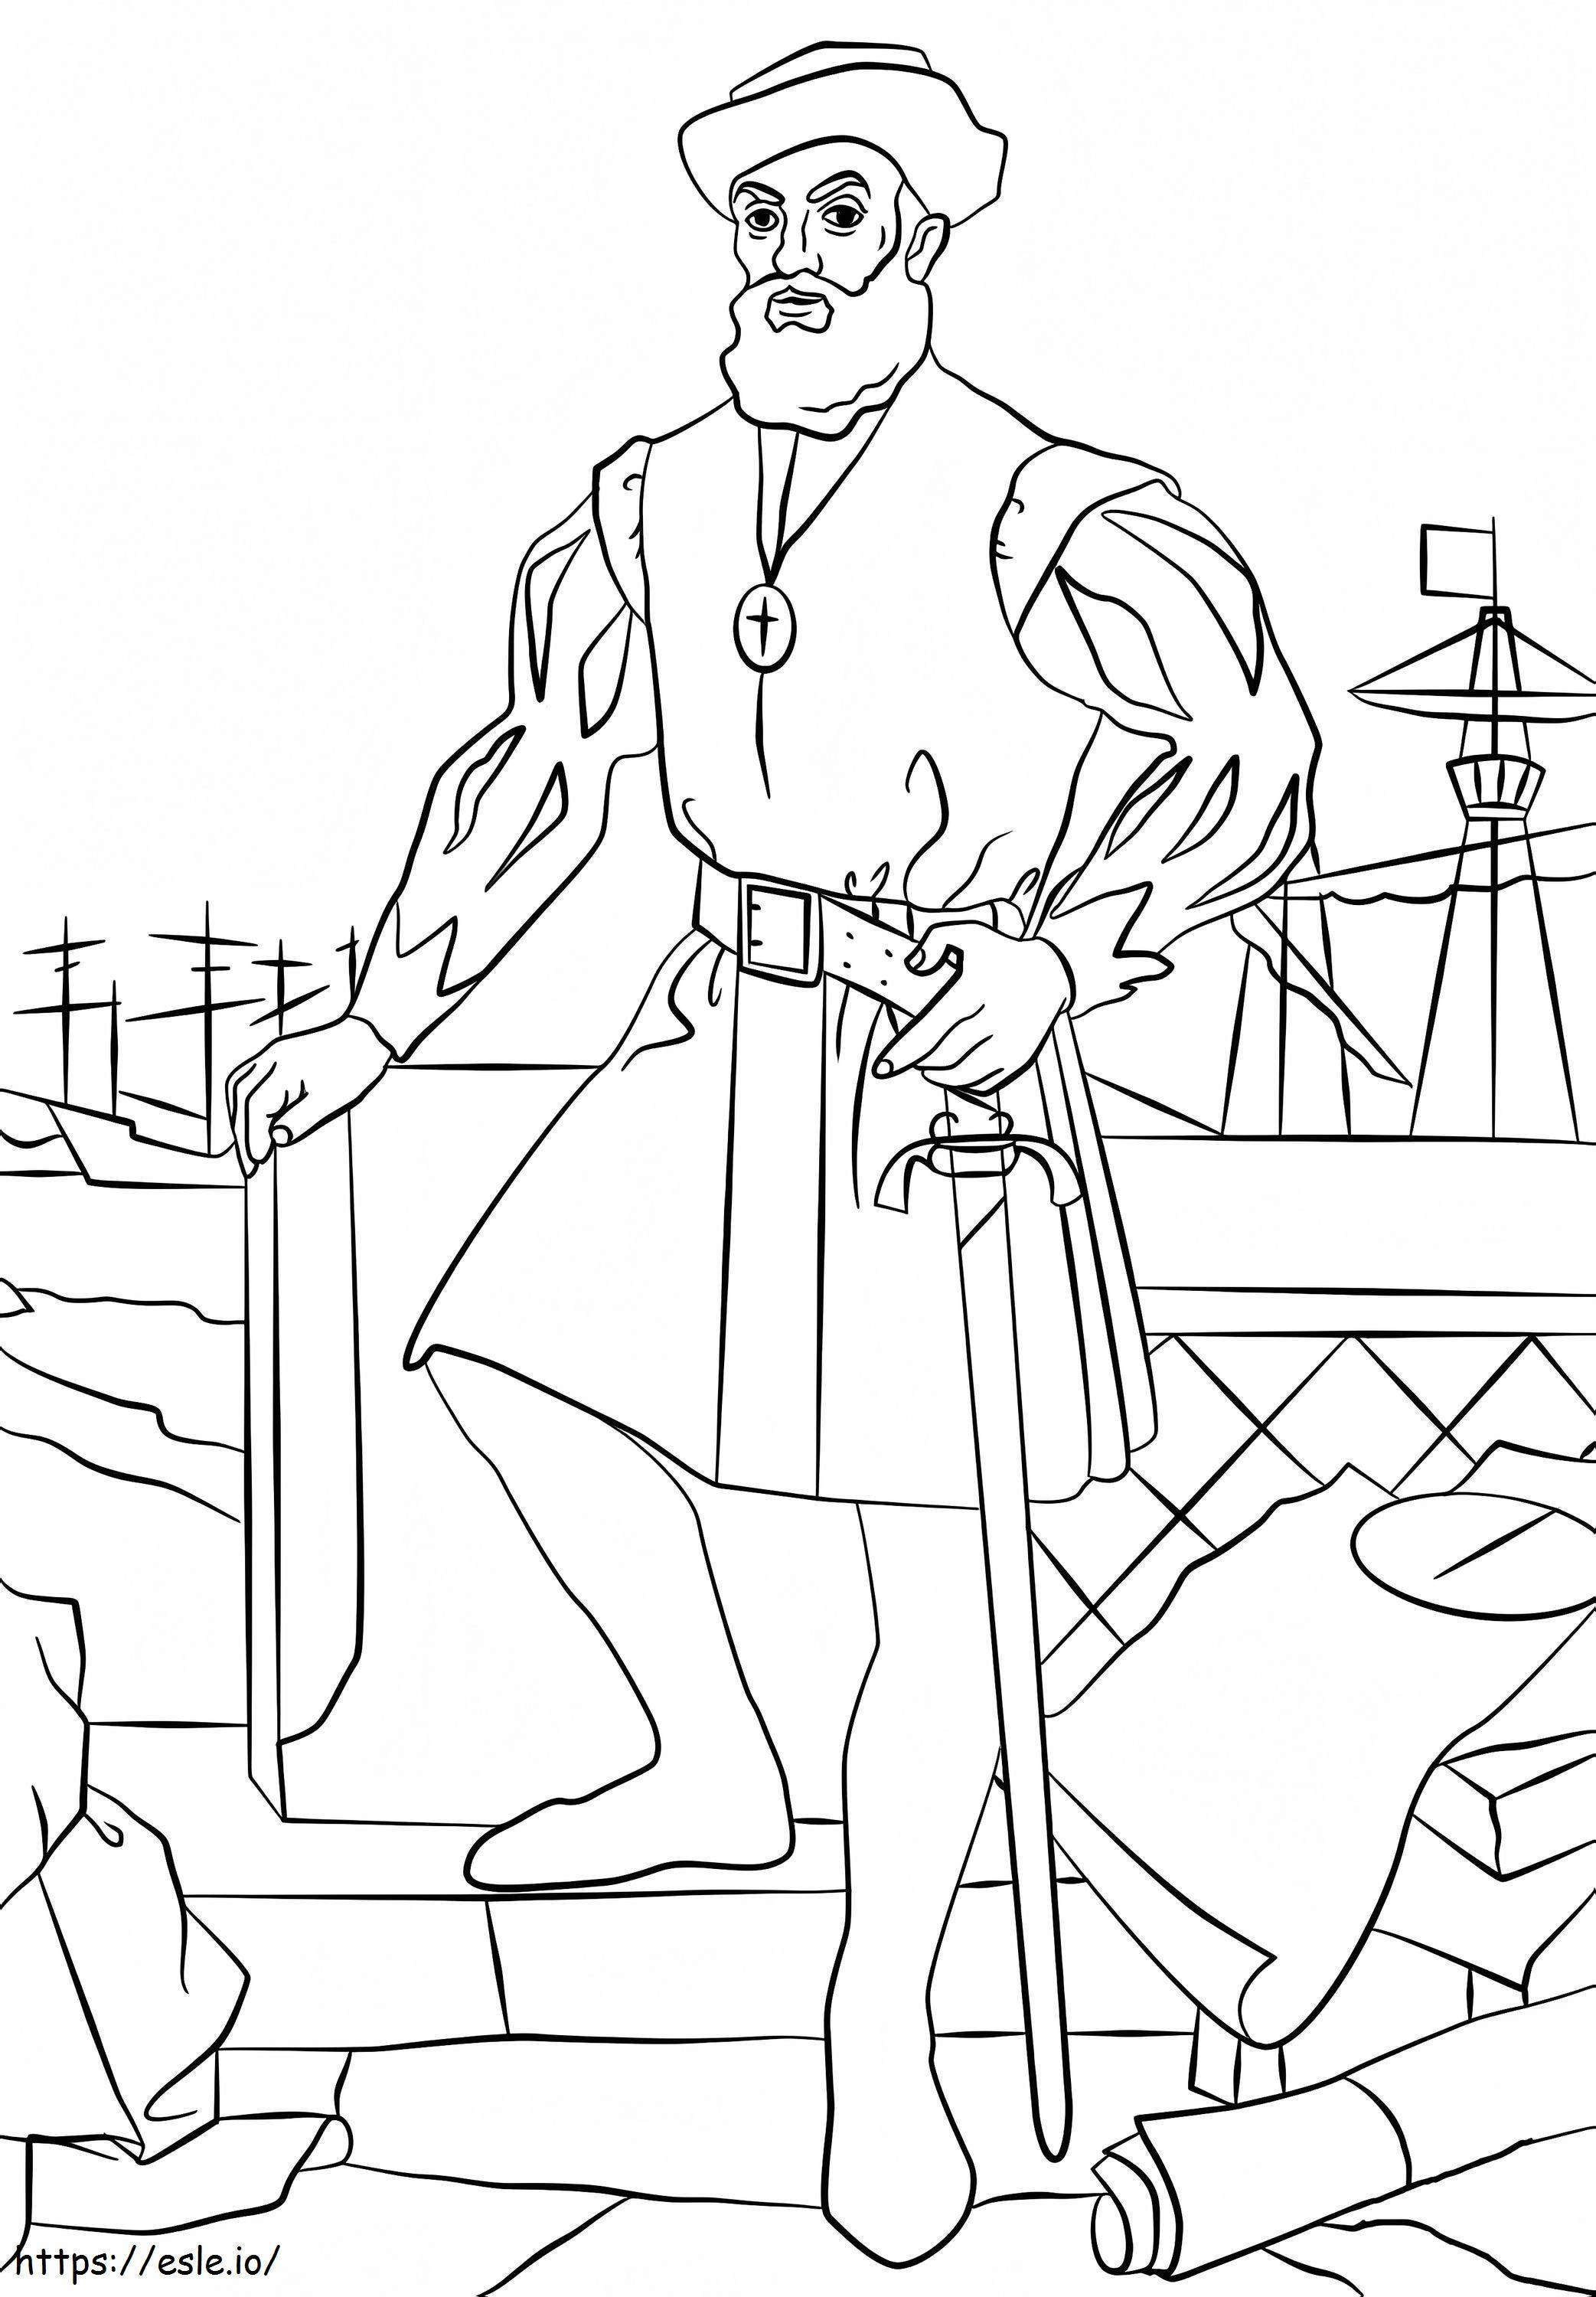 Ferdinand Magellan de colorat